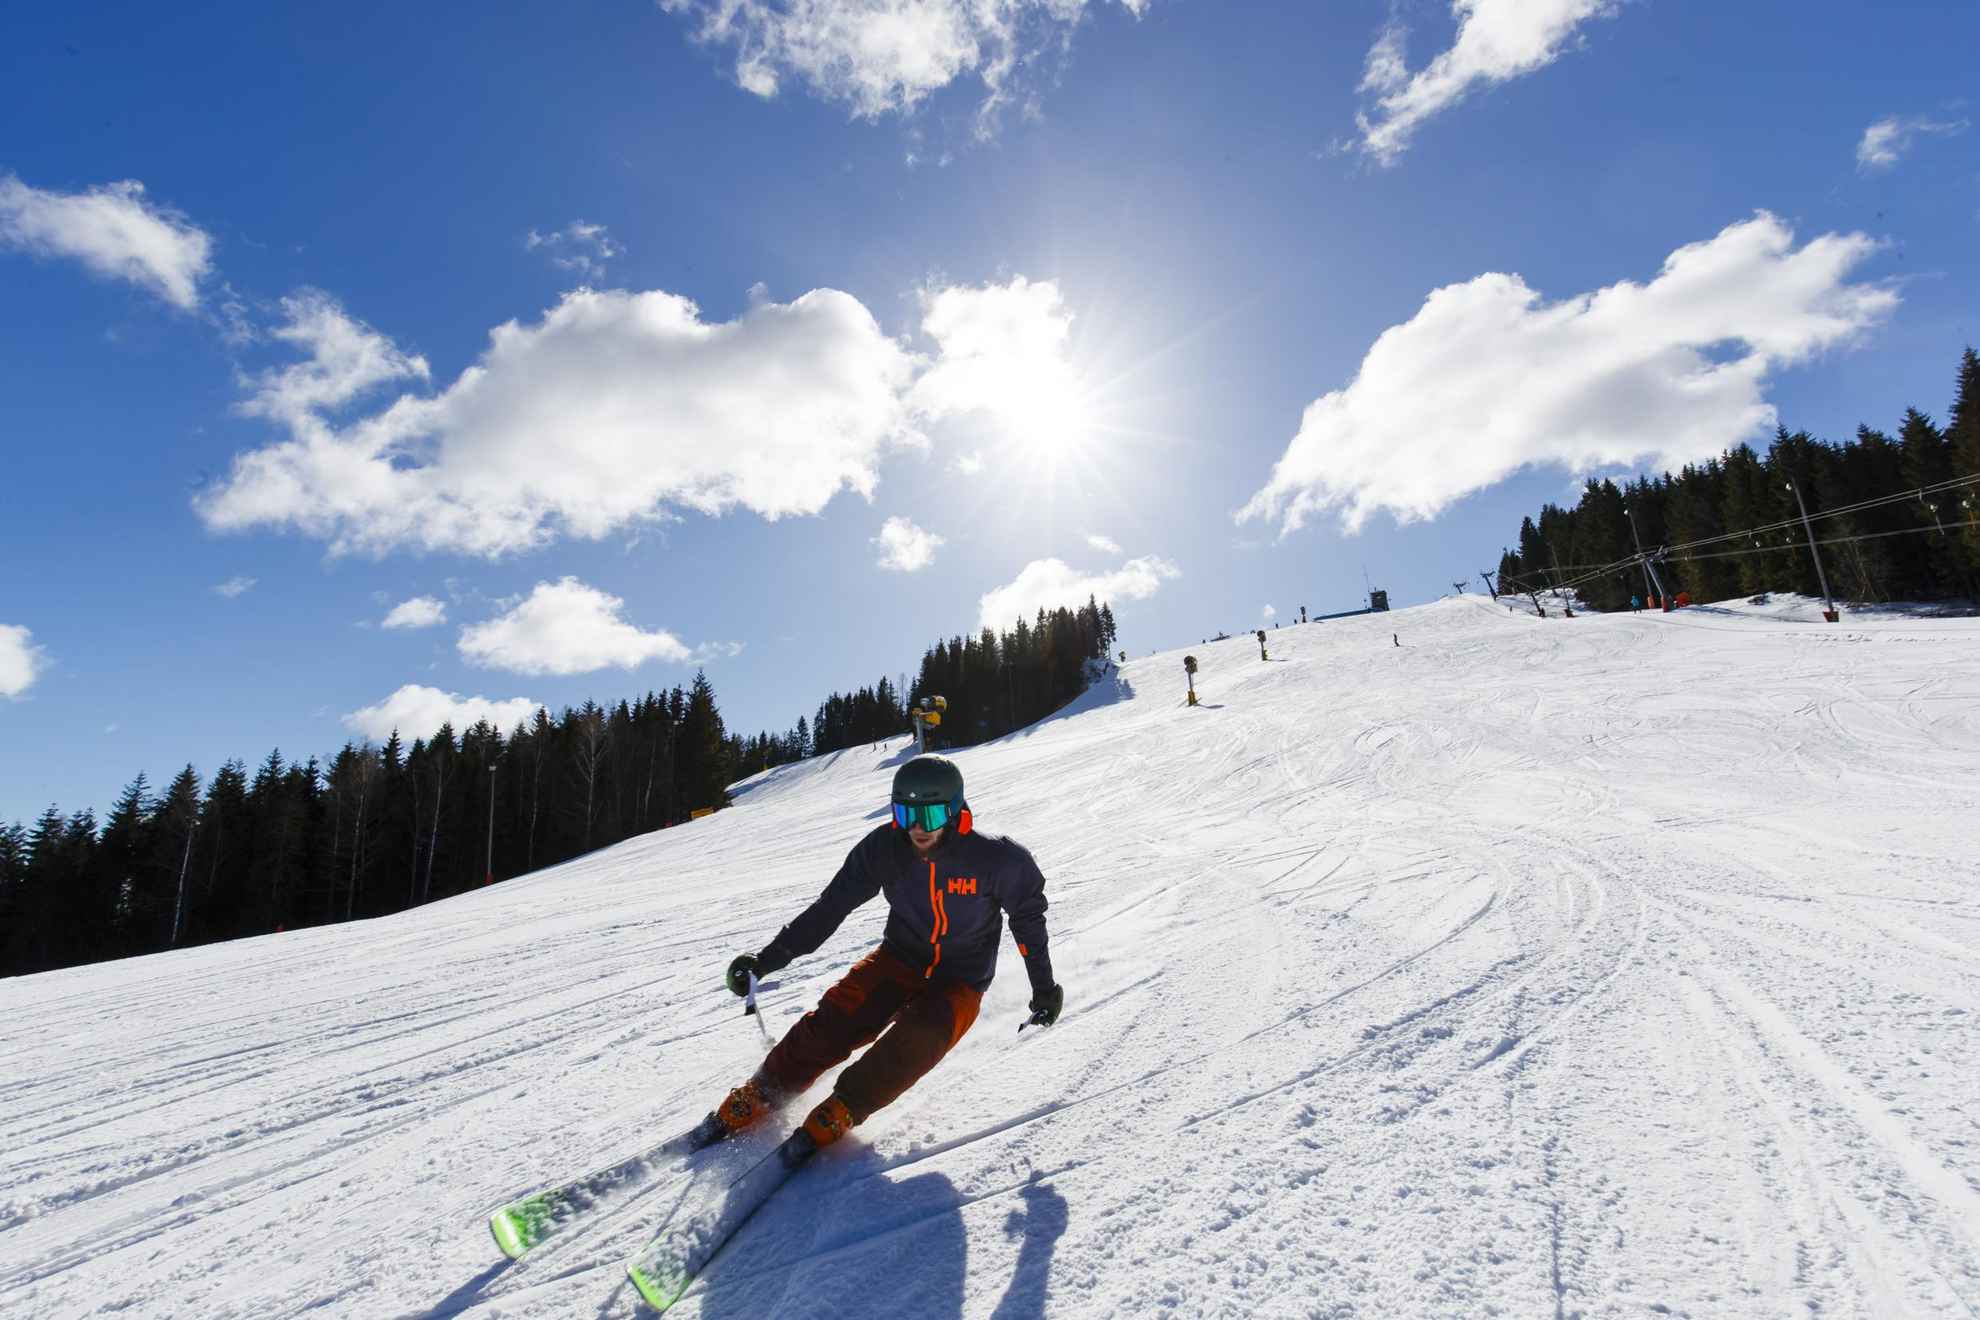 Une personne faisant du ski alpin par une journée d'hiver ensoleillée.